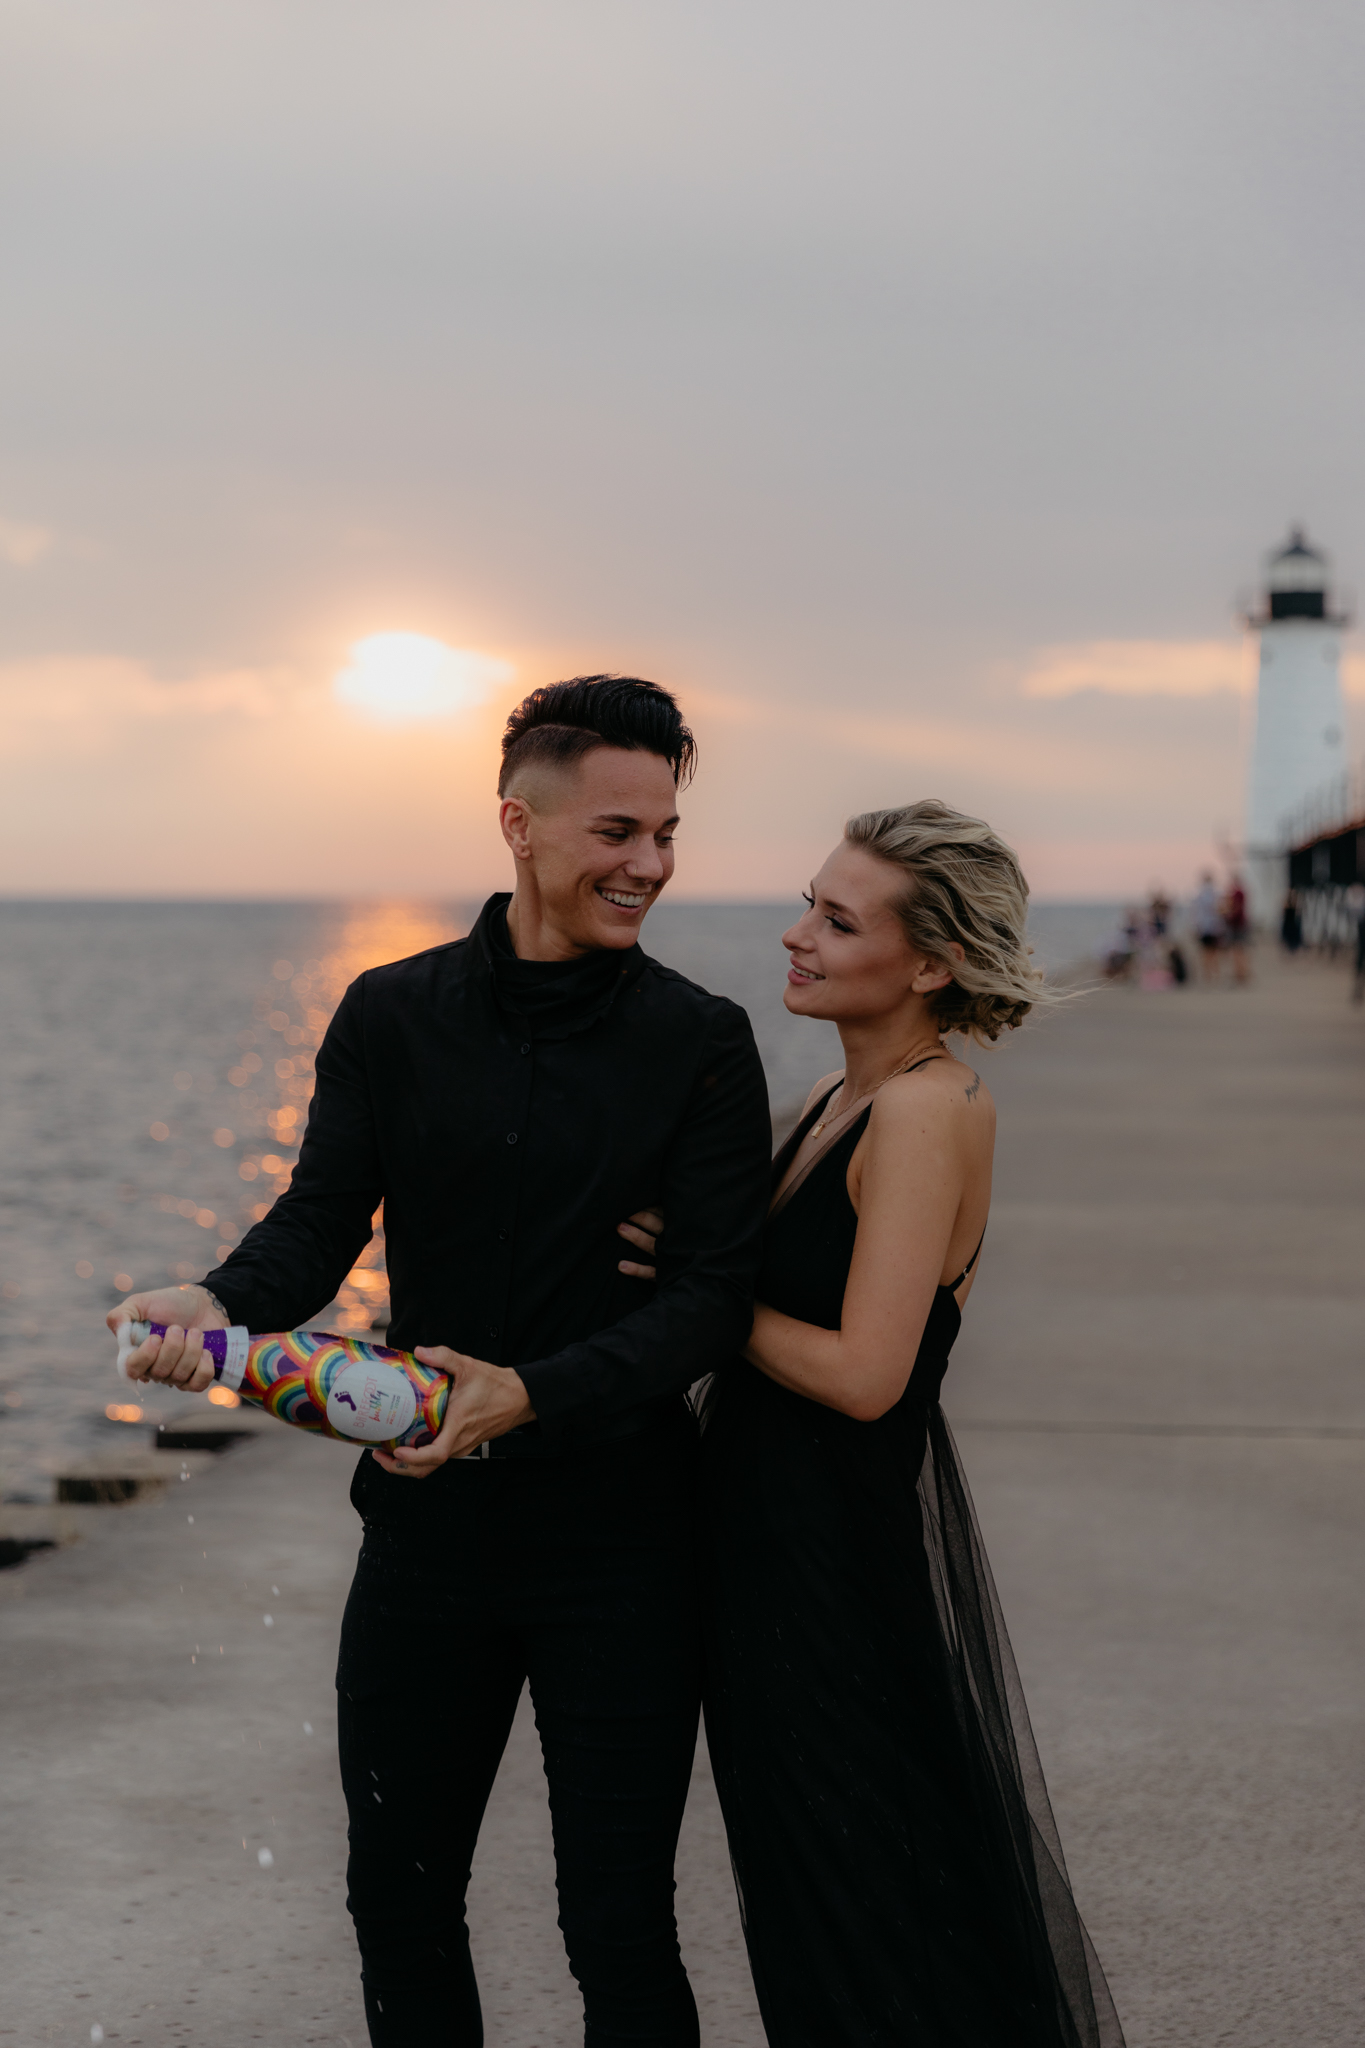 Check out this sweet LGBTQ elopement at Lake Michigan